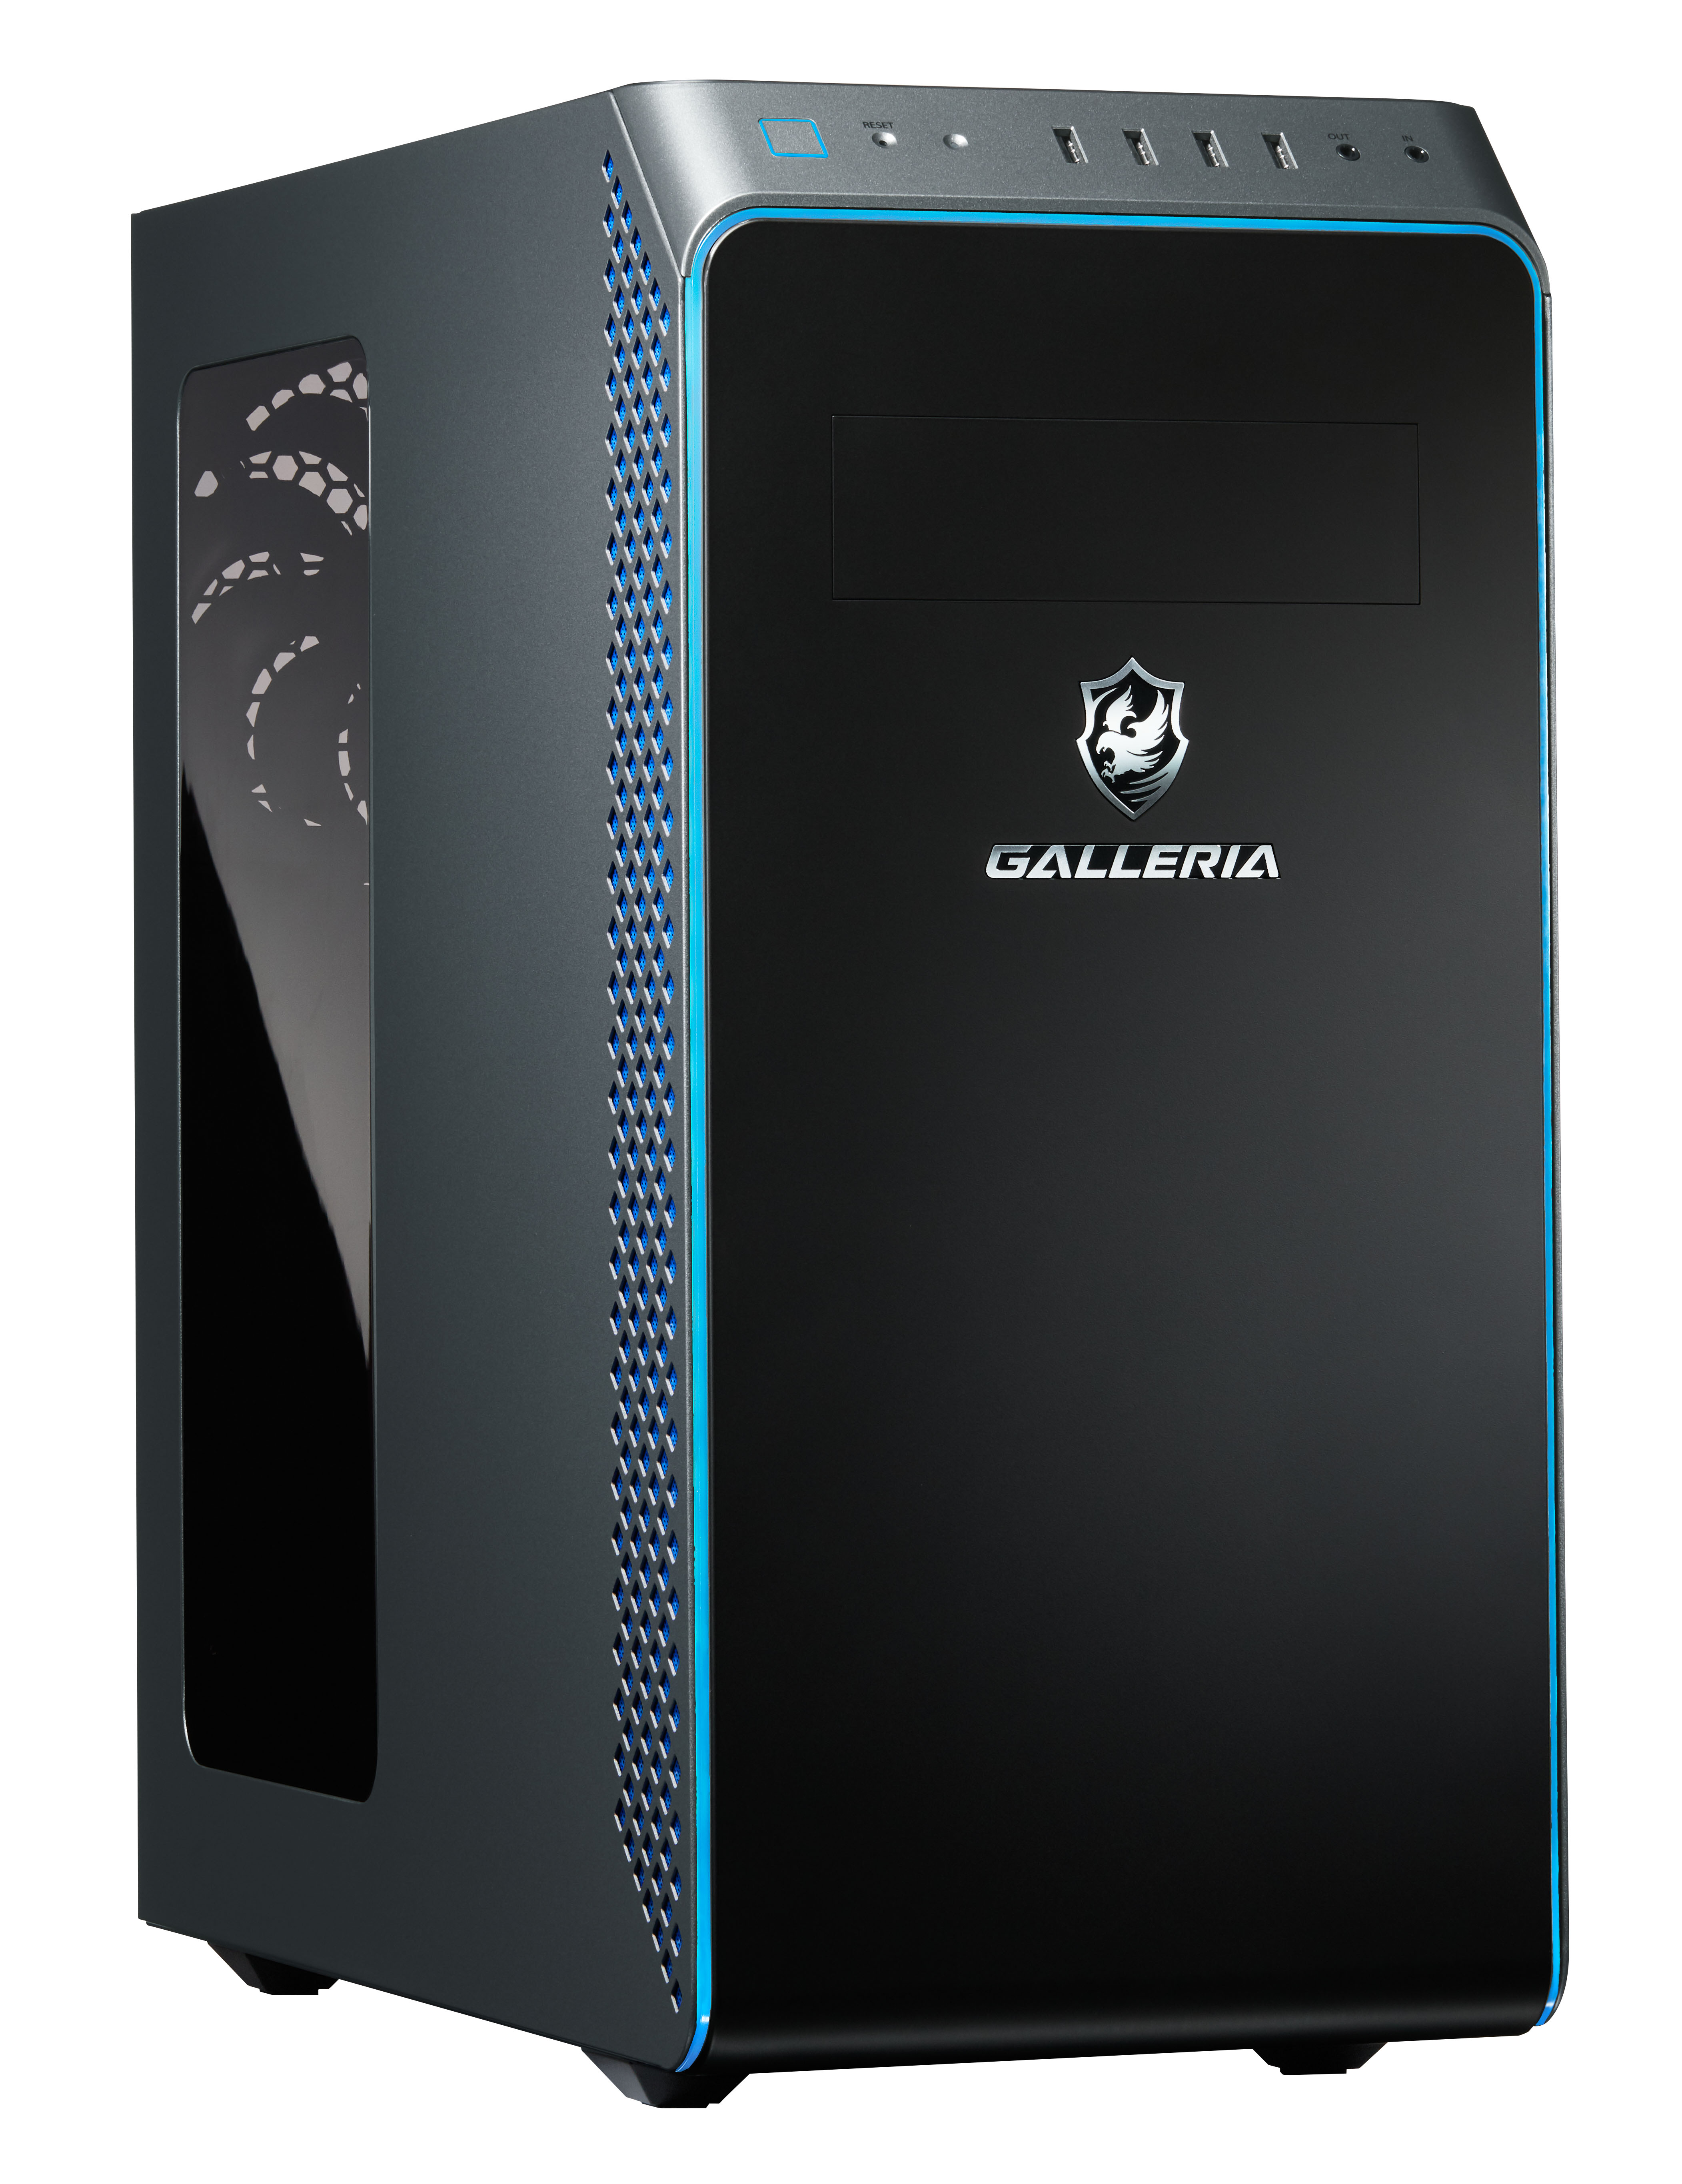 ゲーミングPC GALLERIA(ガレリア) Xシリーズ 標準搭載SSDを1TBへ大容量 